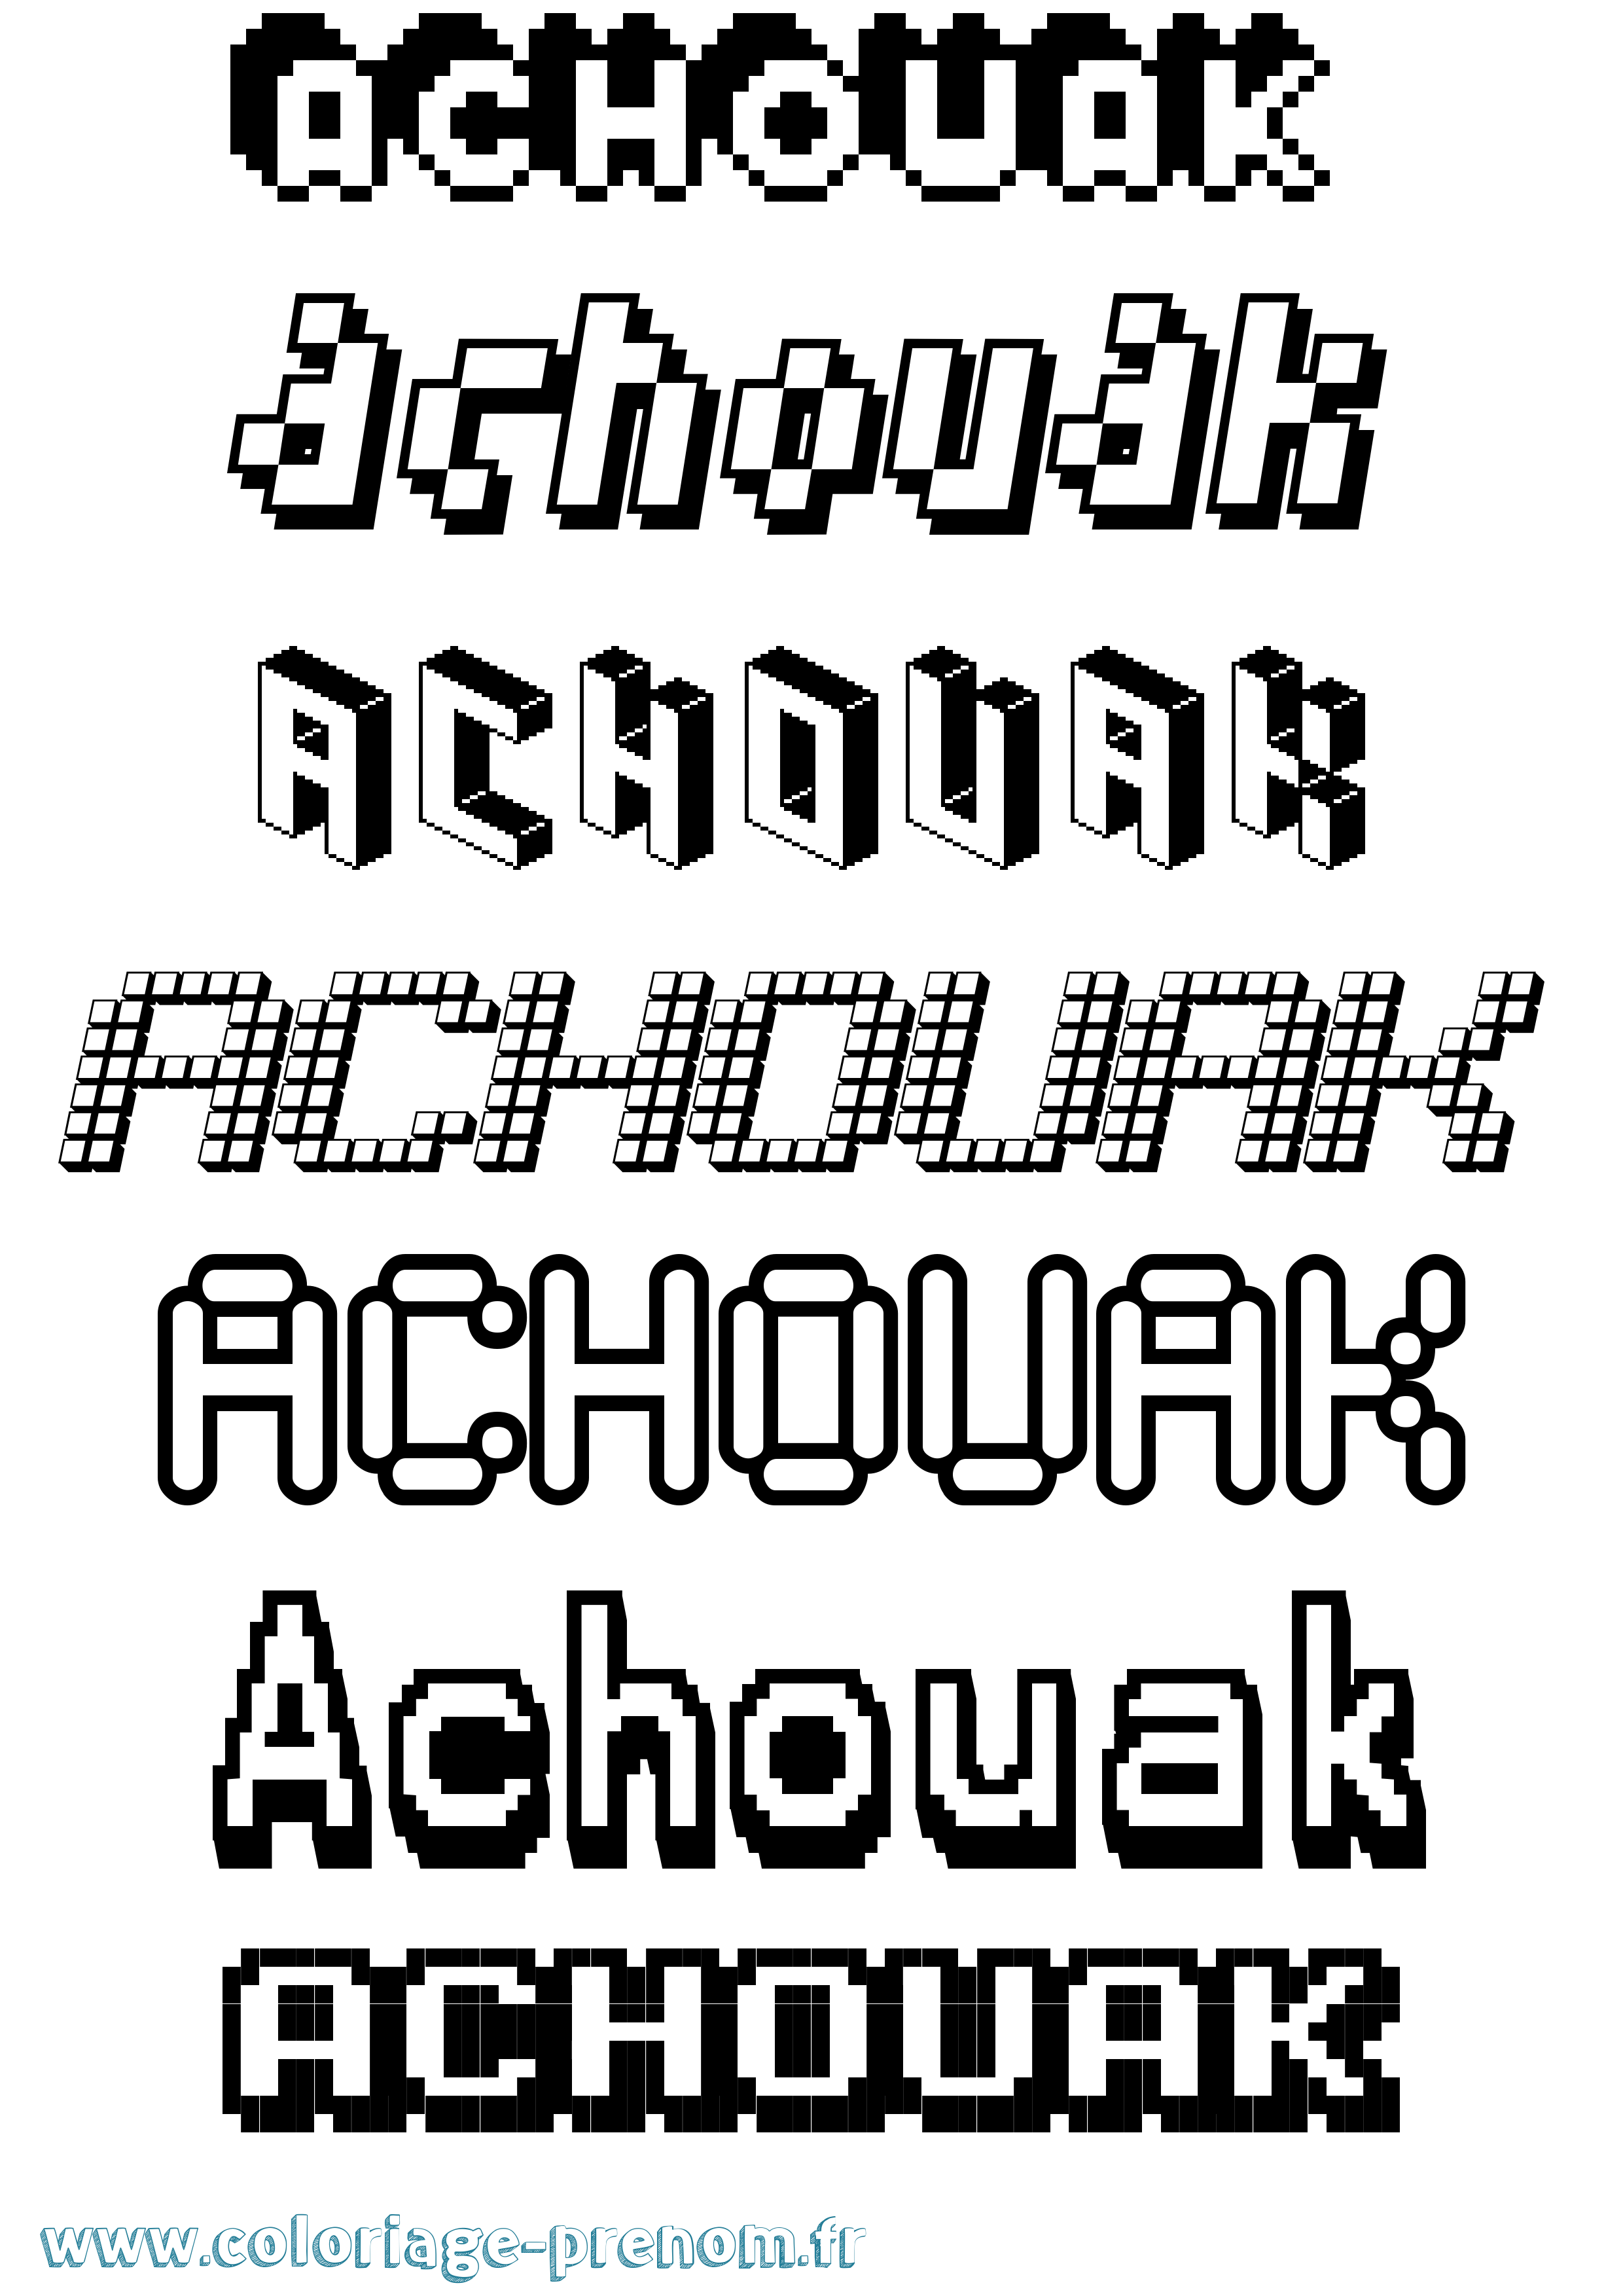 Coloriage prénom Achouak Pixel